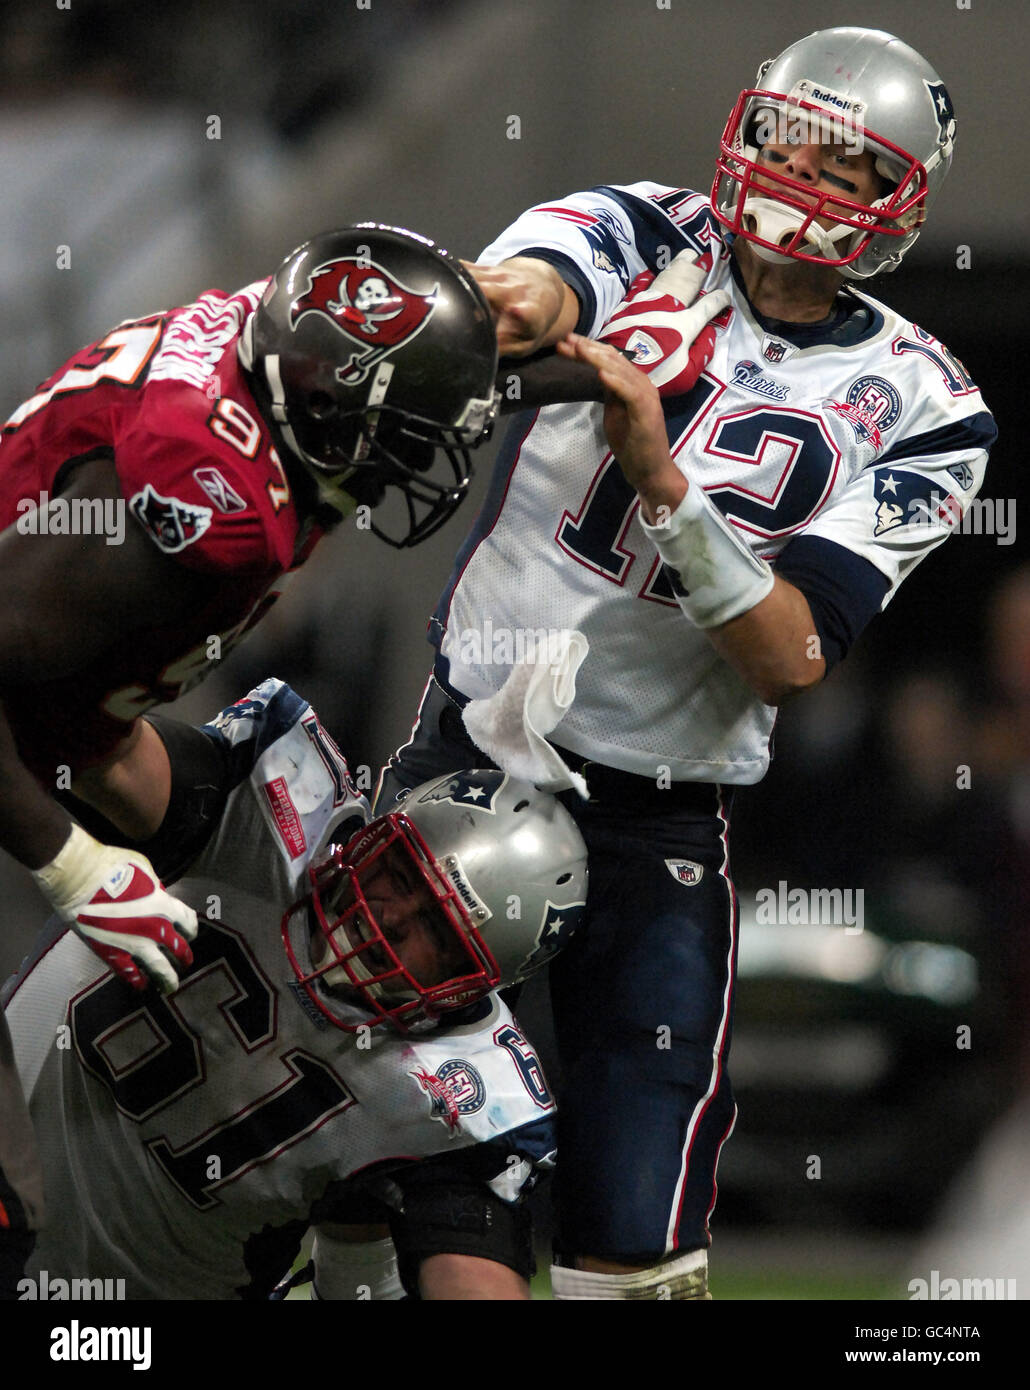 Tom Brady (rechts) von New England Patriots geht vorbei, während Teamkollege Stephen Neal (unten) während des NFL-Spiels im Wembley Stadium, London, ein Tackle von Jimmy Wilkerson von Tampa Bay Buccaneers (links) blockiert. Stockfoto